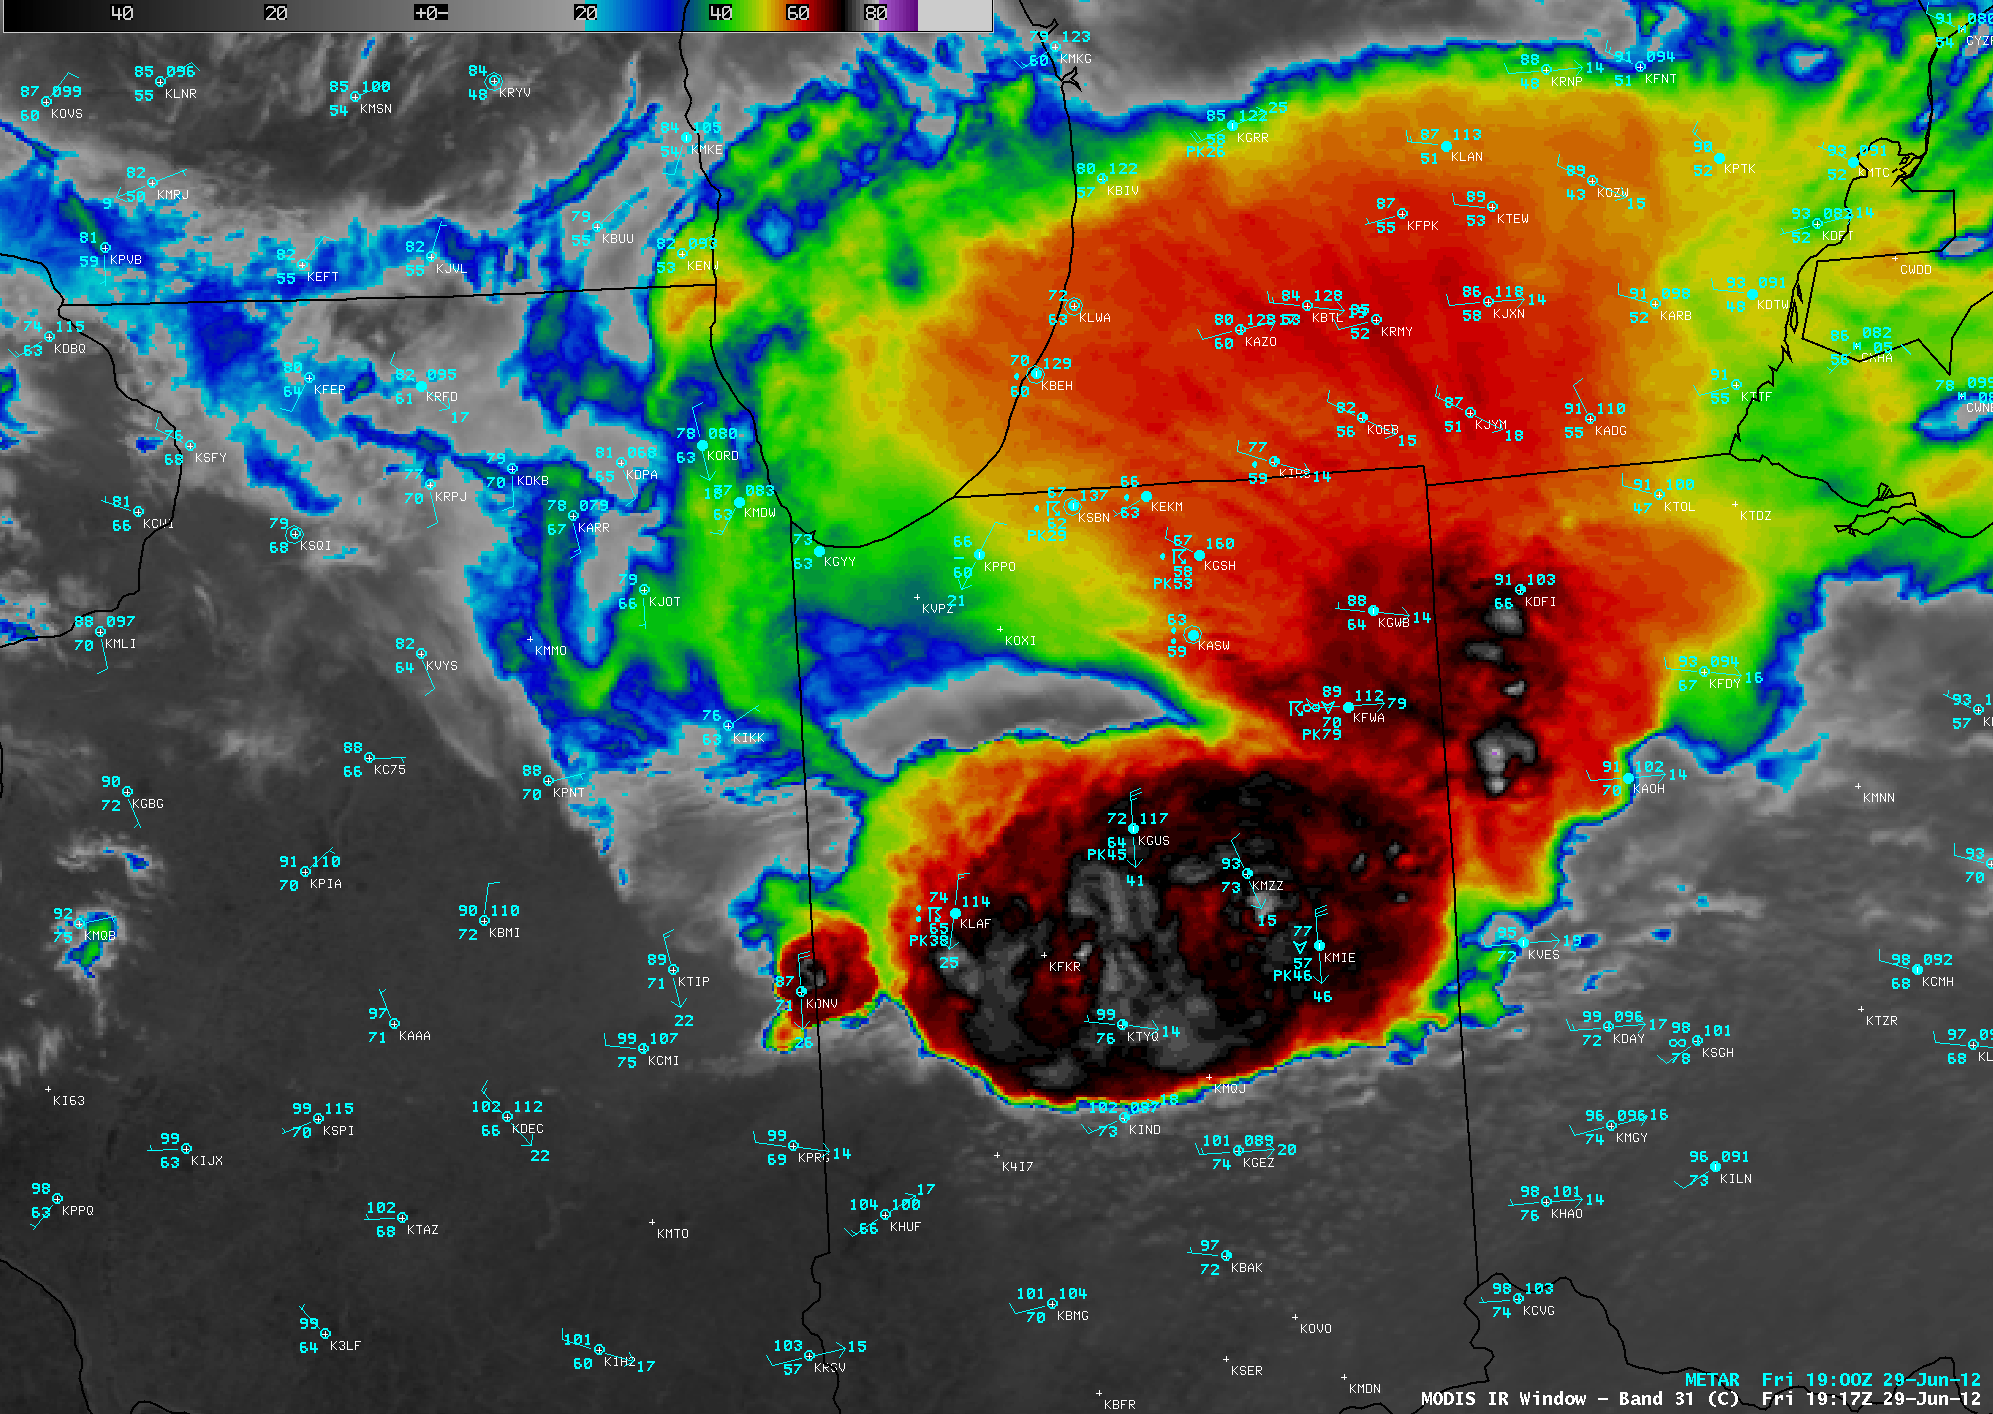 MODIS 0.65 Âµm visible, 11.0 Âµm IR, and cloud-to-ground lightning strikes data